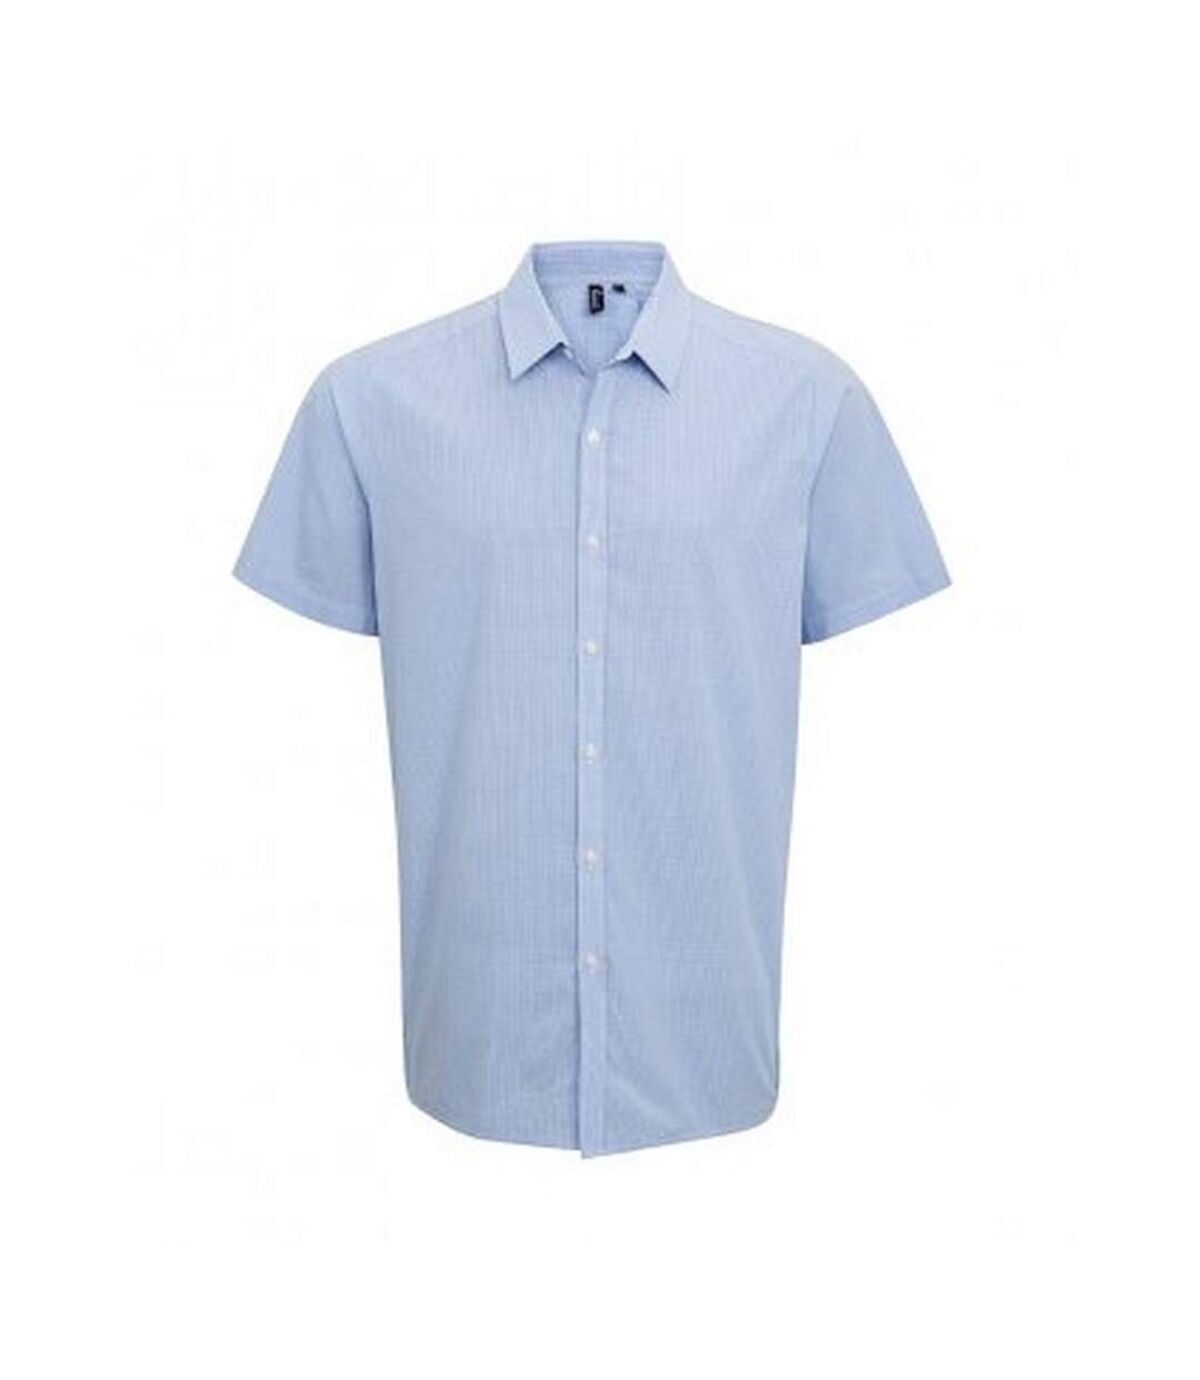 Premier Mens Gingham Short Sleeve Shirt (Light Blue/White)